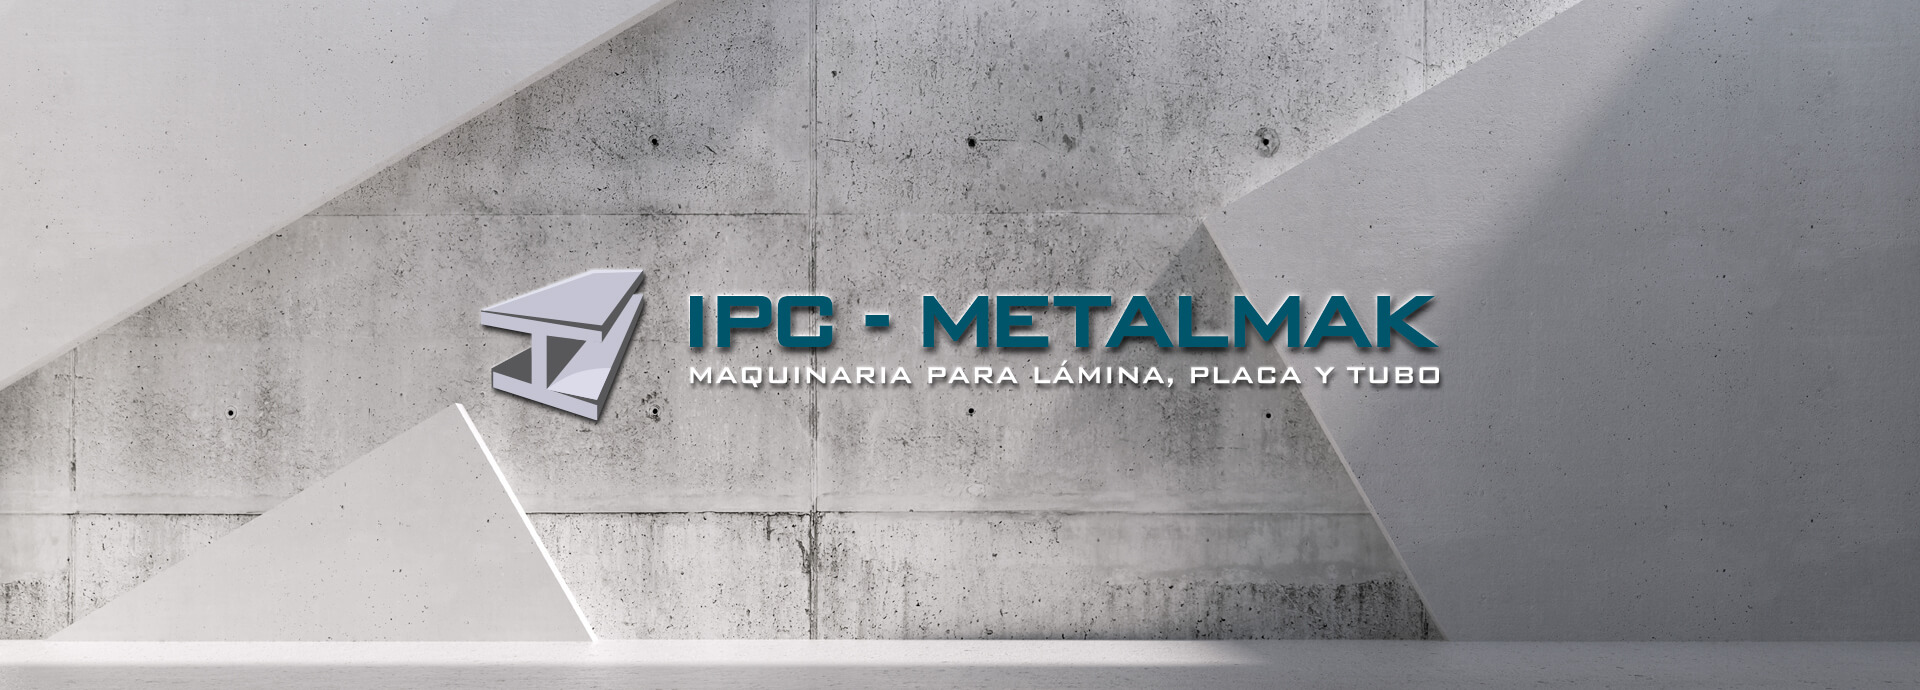 IPC-Metalmak | Maquinaria para Lámina, Placa y Tubo